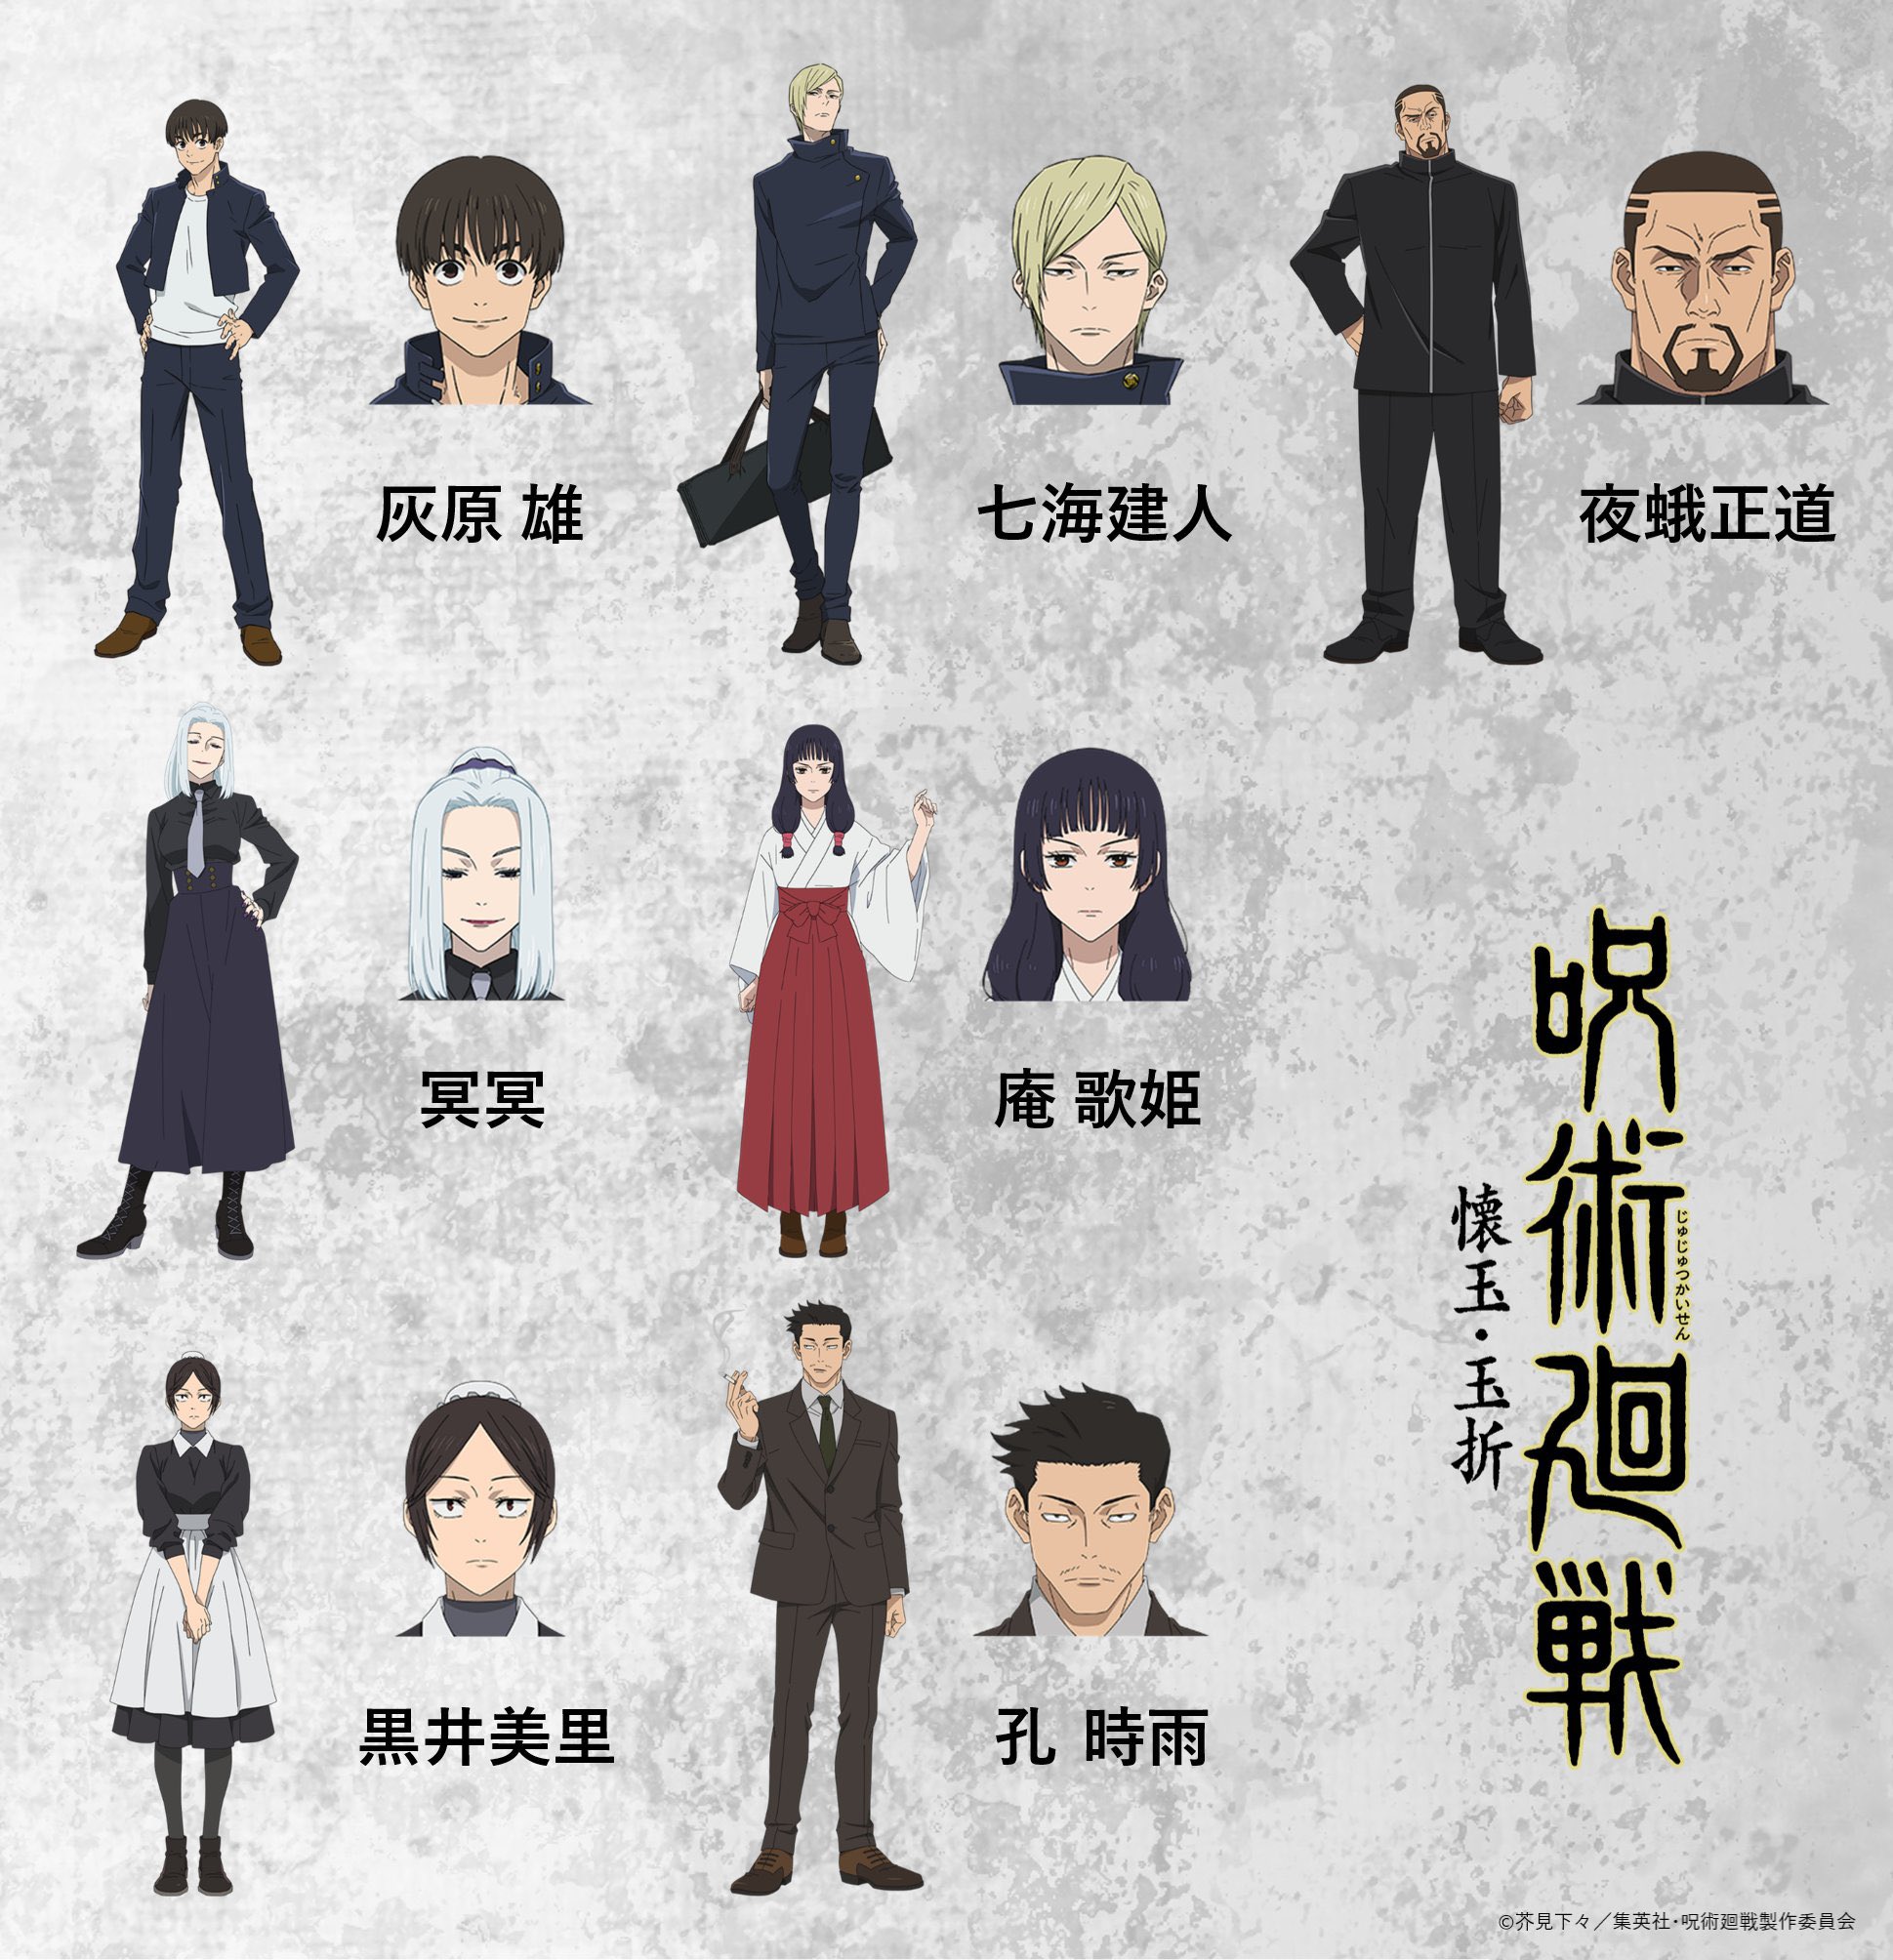 Fire Force  Confira os designs de personagens da segunda temporada